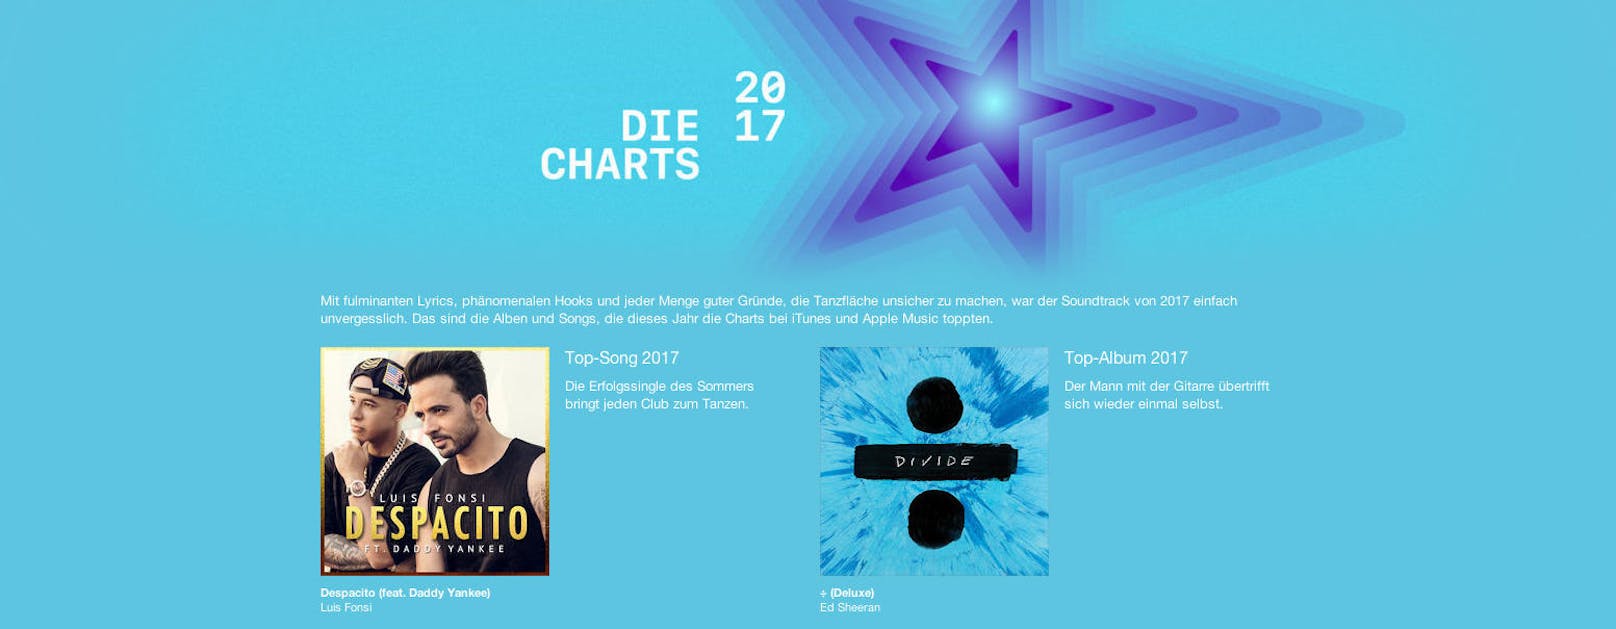 Bei den Songs holten sich die Österreicher aus dem App Store "Luis Fonsi - Despacito", "Ed Sheeran - Shape of You" und "Burak Yeter - Tuesday".